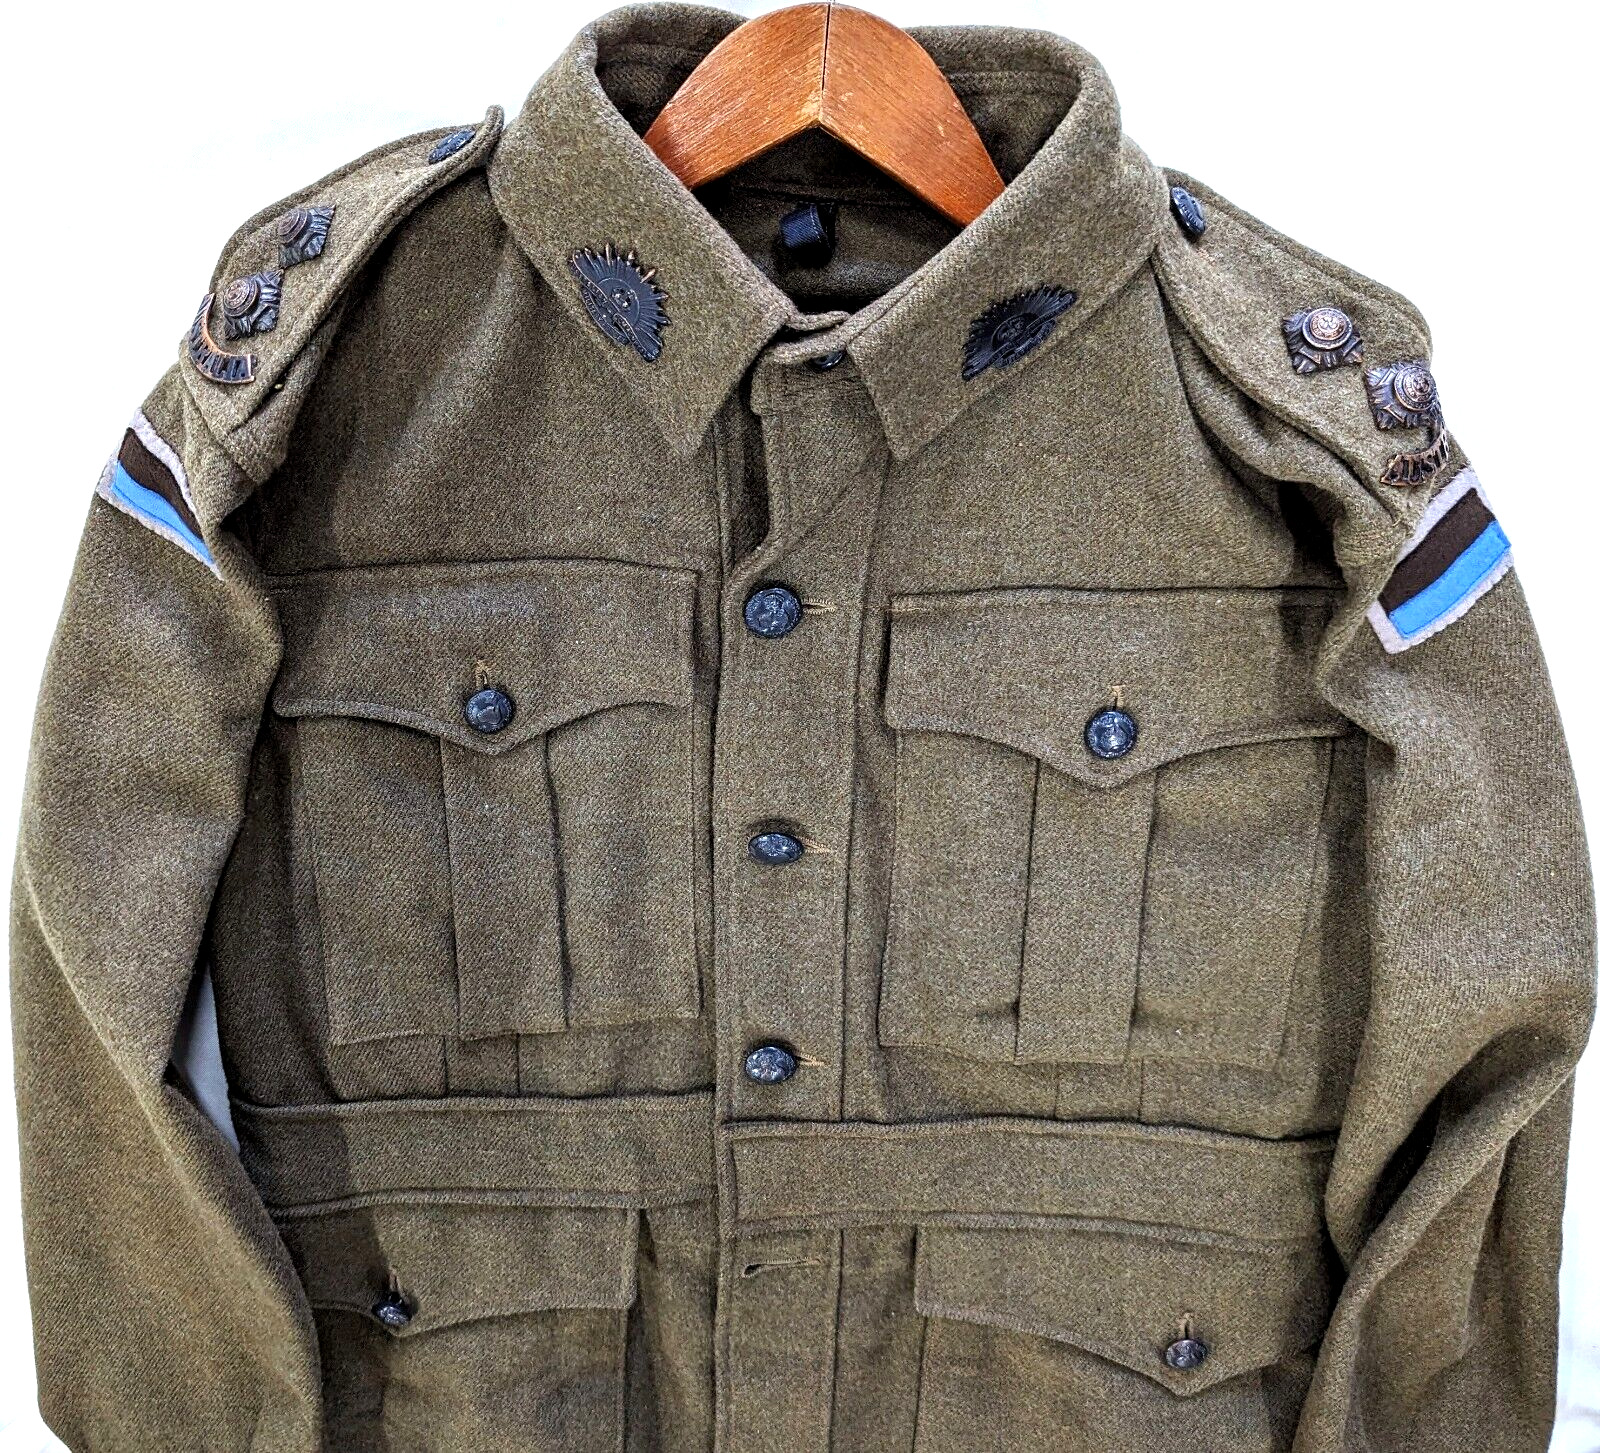 2/11th Battalion obsolete WW2 1942 Australian army AIF uniform tunic jacket